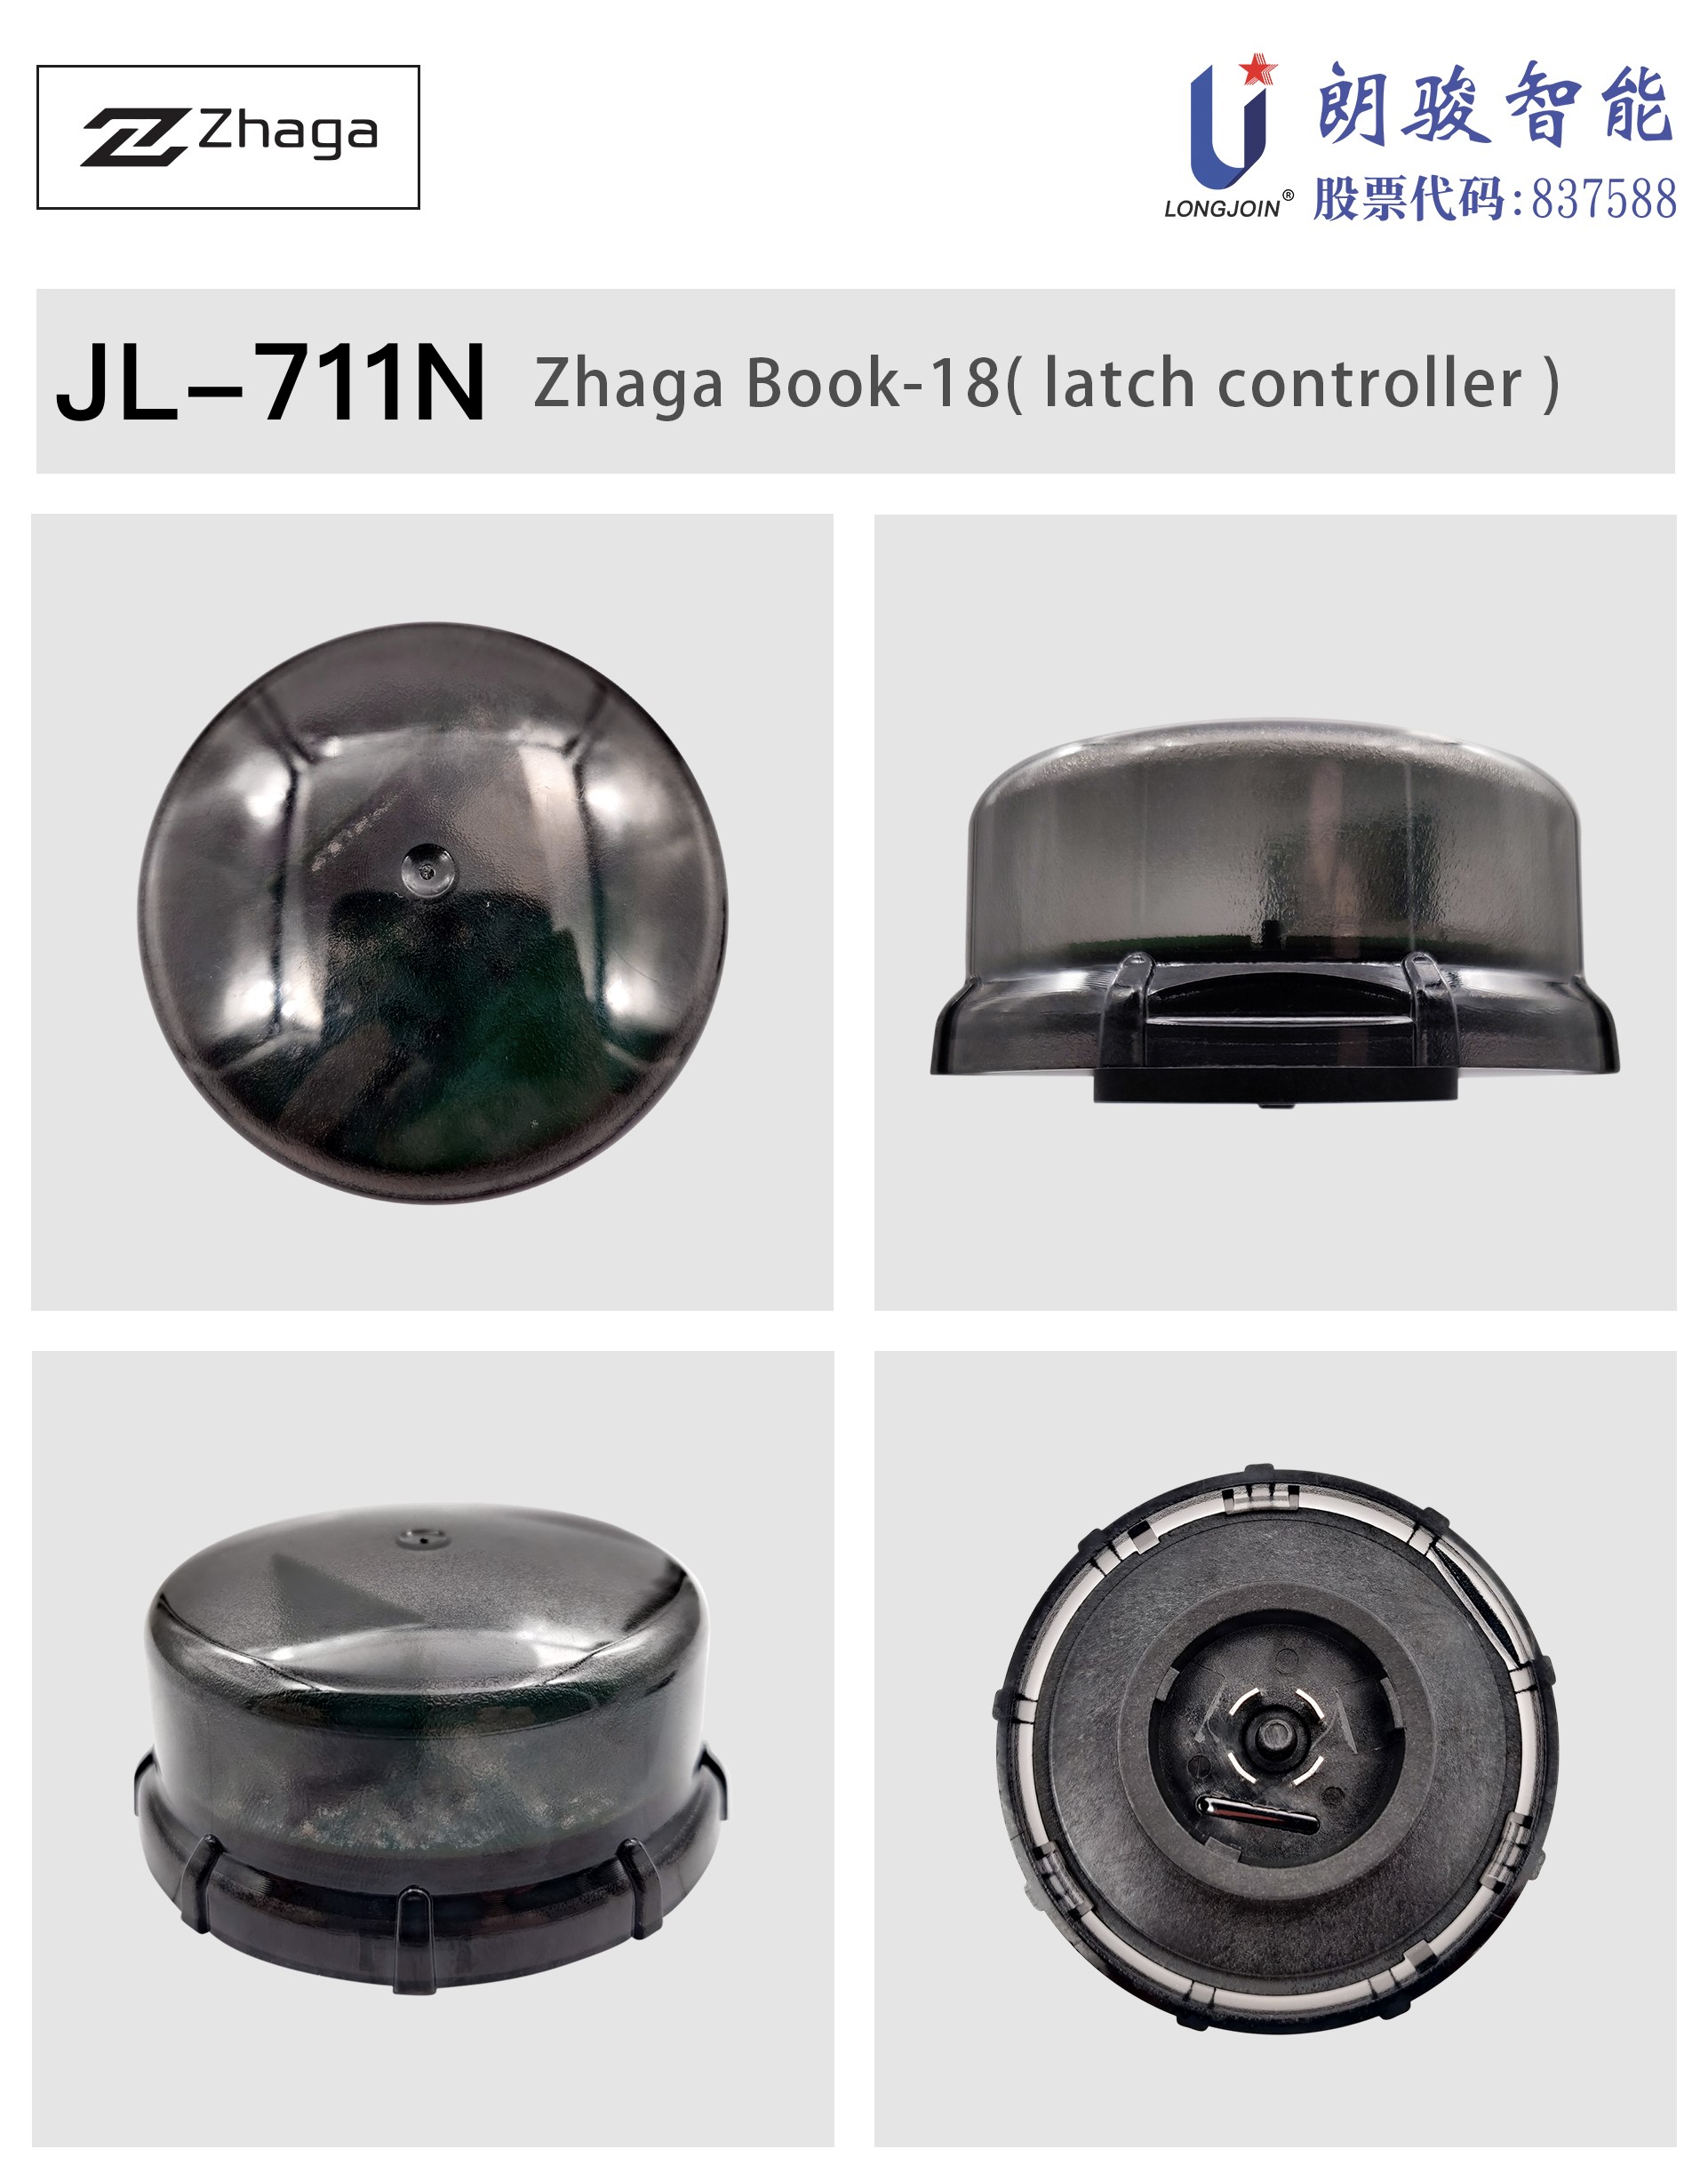 英文版1-JL-711NN 产品图片.jpg